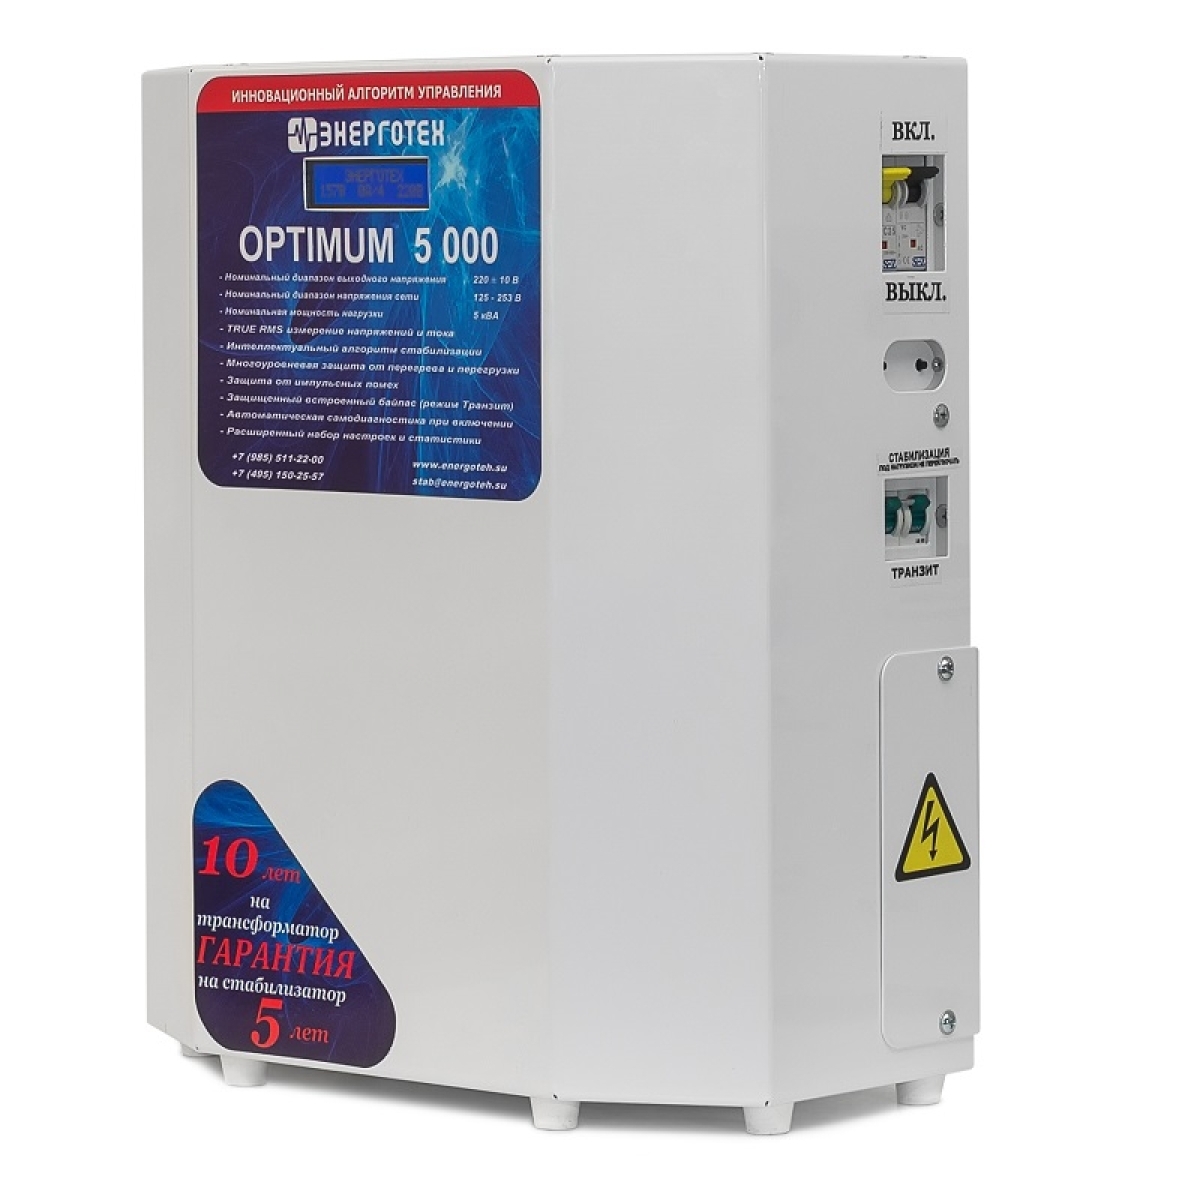 Однофазный стабилизатор Энерготех OPTIMUM+ 5000, вид справа